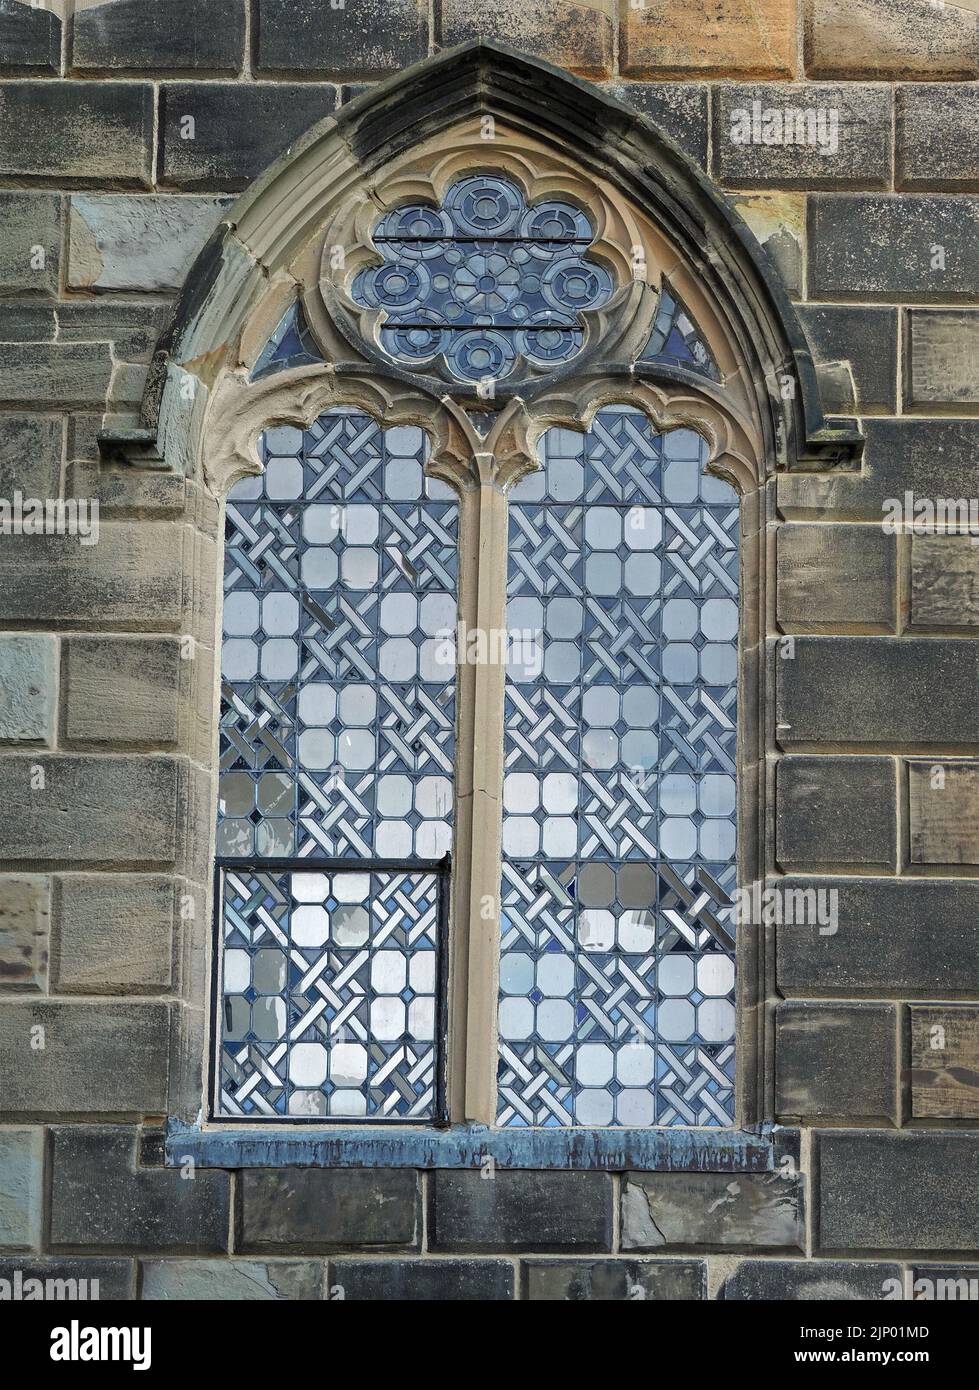 Patrones contrastantes en el antiguo cristal de la ventana arqueada de mullion sobre la entrada de piedra al Bishop's Palace, Bishop Auckland, County Durham, Inglaterra, Reino Unido Foto de stock